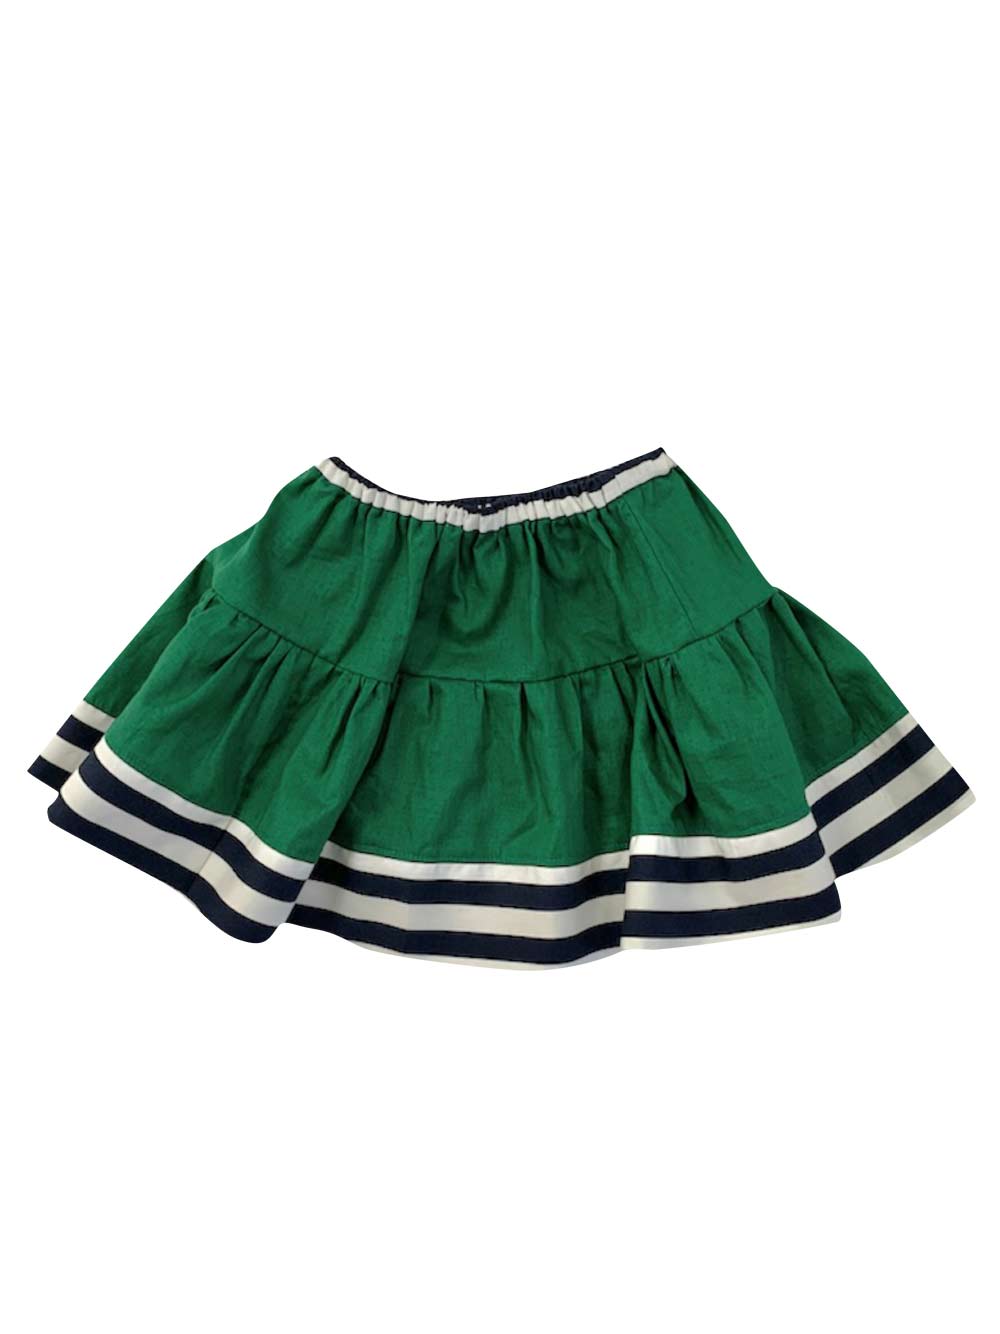 Green Short Skirt